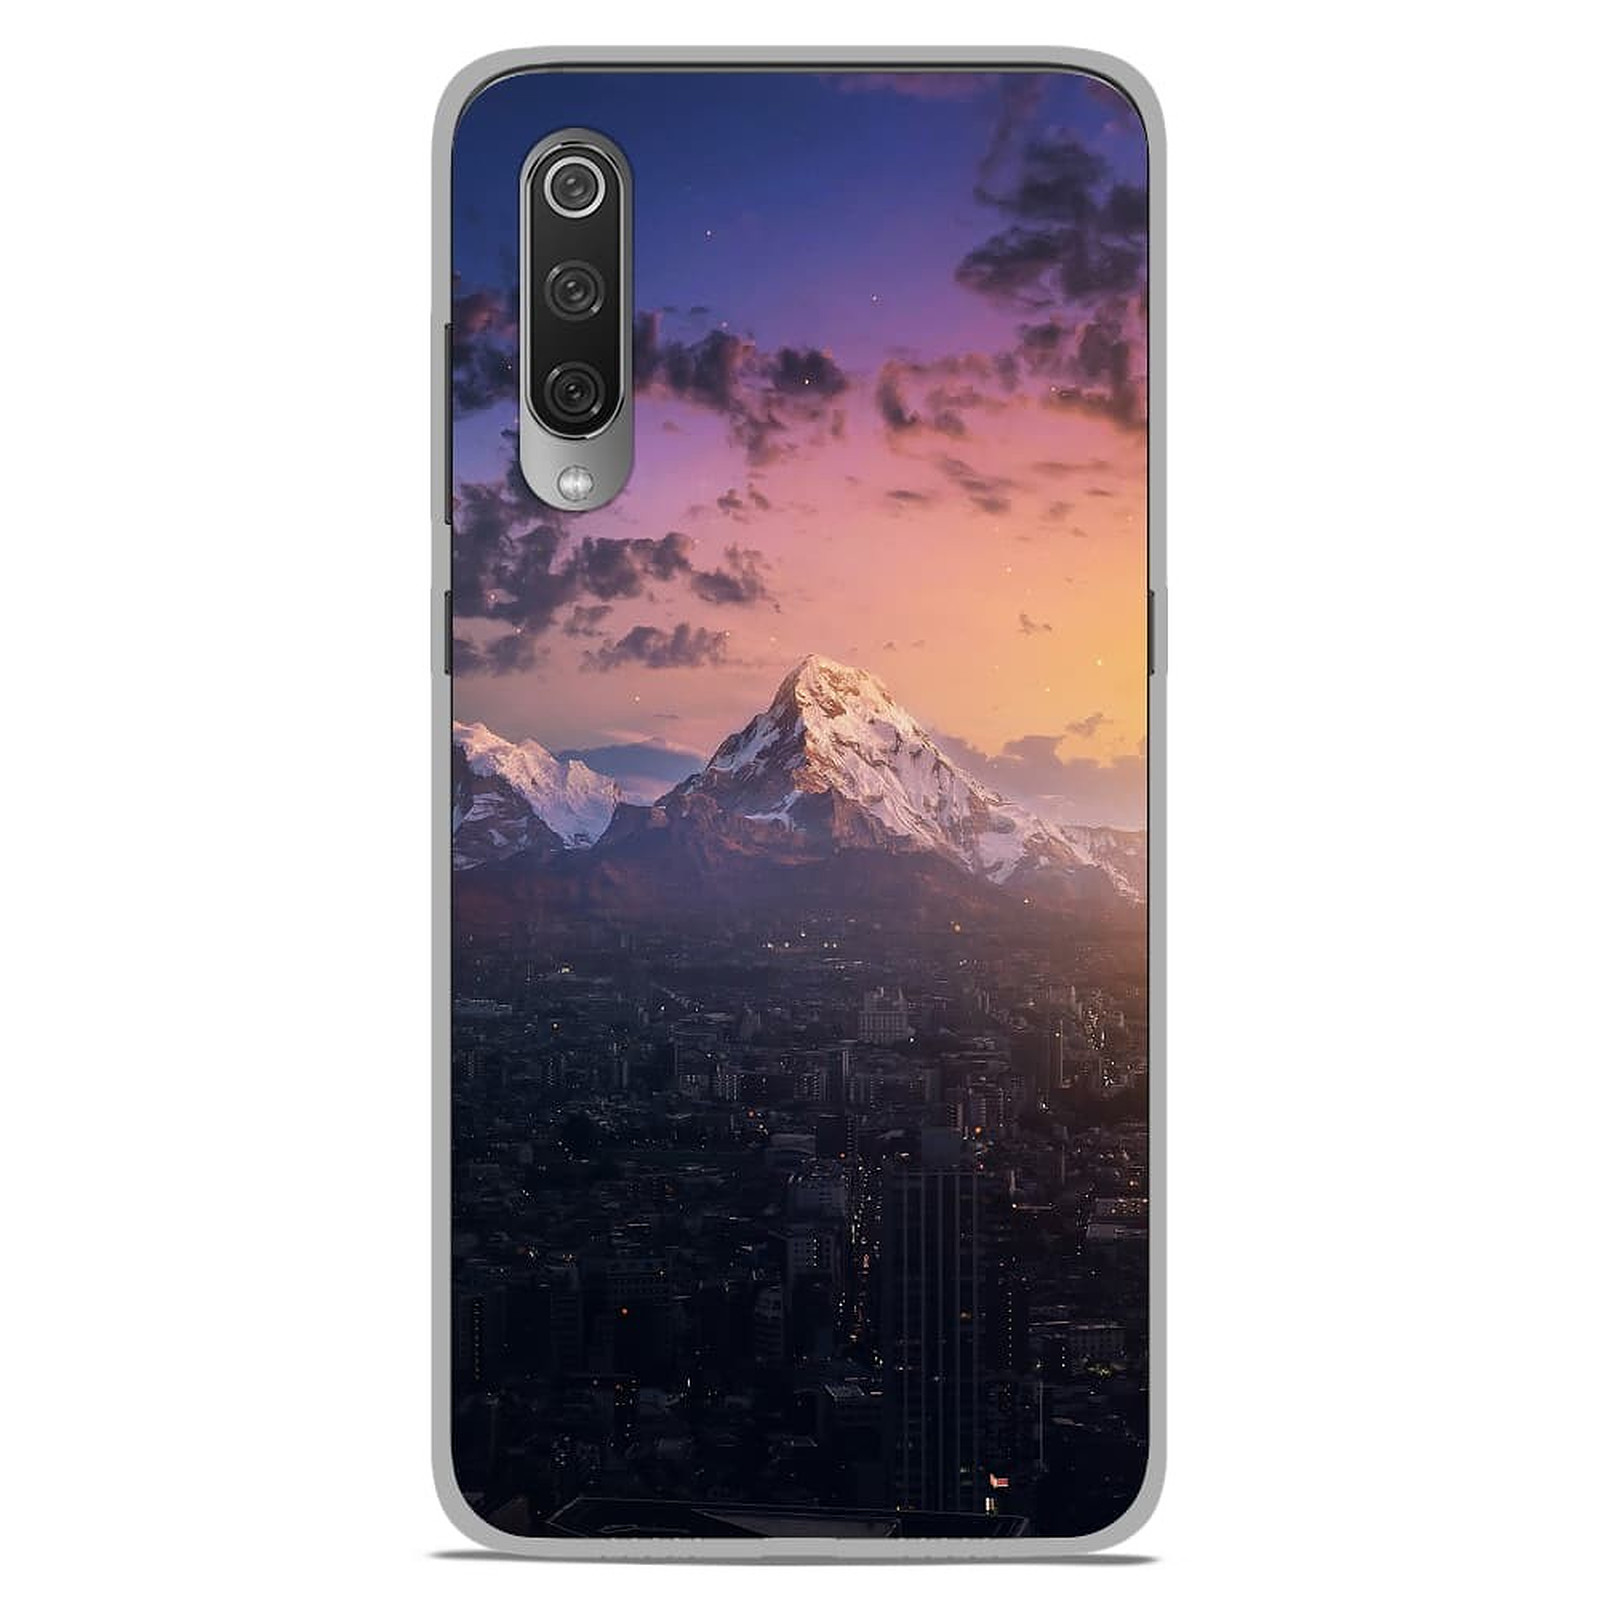 1001 Coques Coque silicone gel Xiaomi Mi 9 / Mi 9 Pro motif Montagnes urbaines - Coque telephone 1001Coques